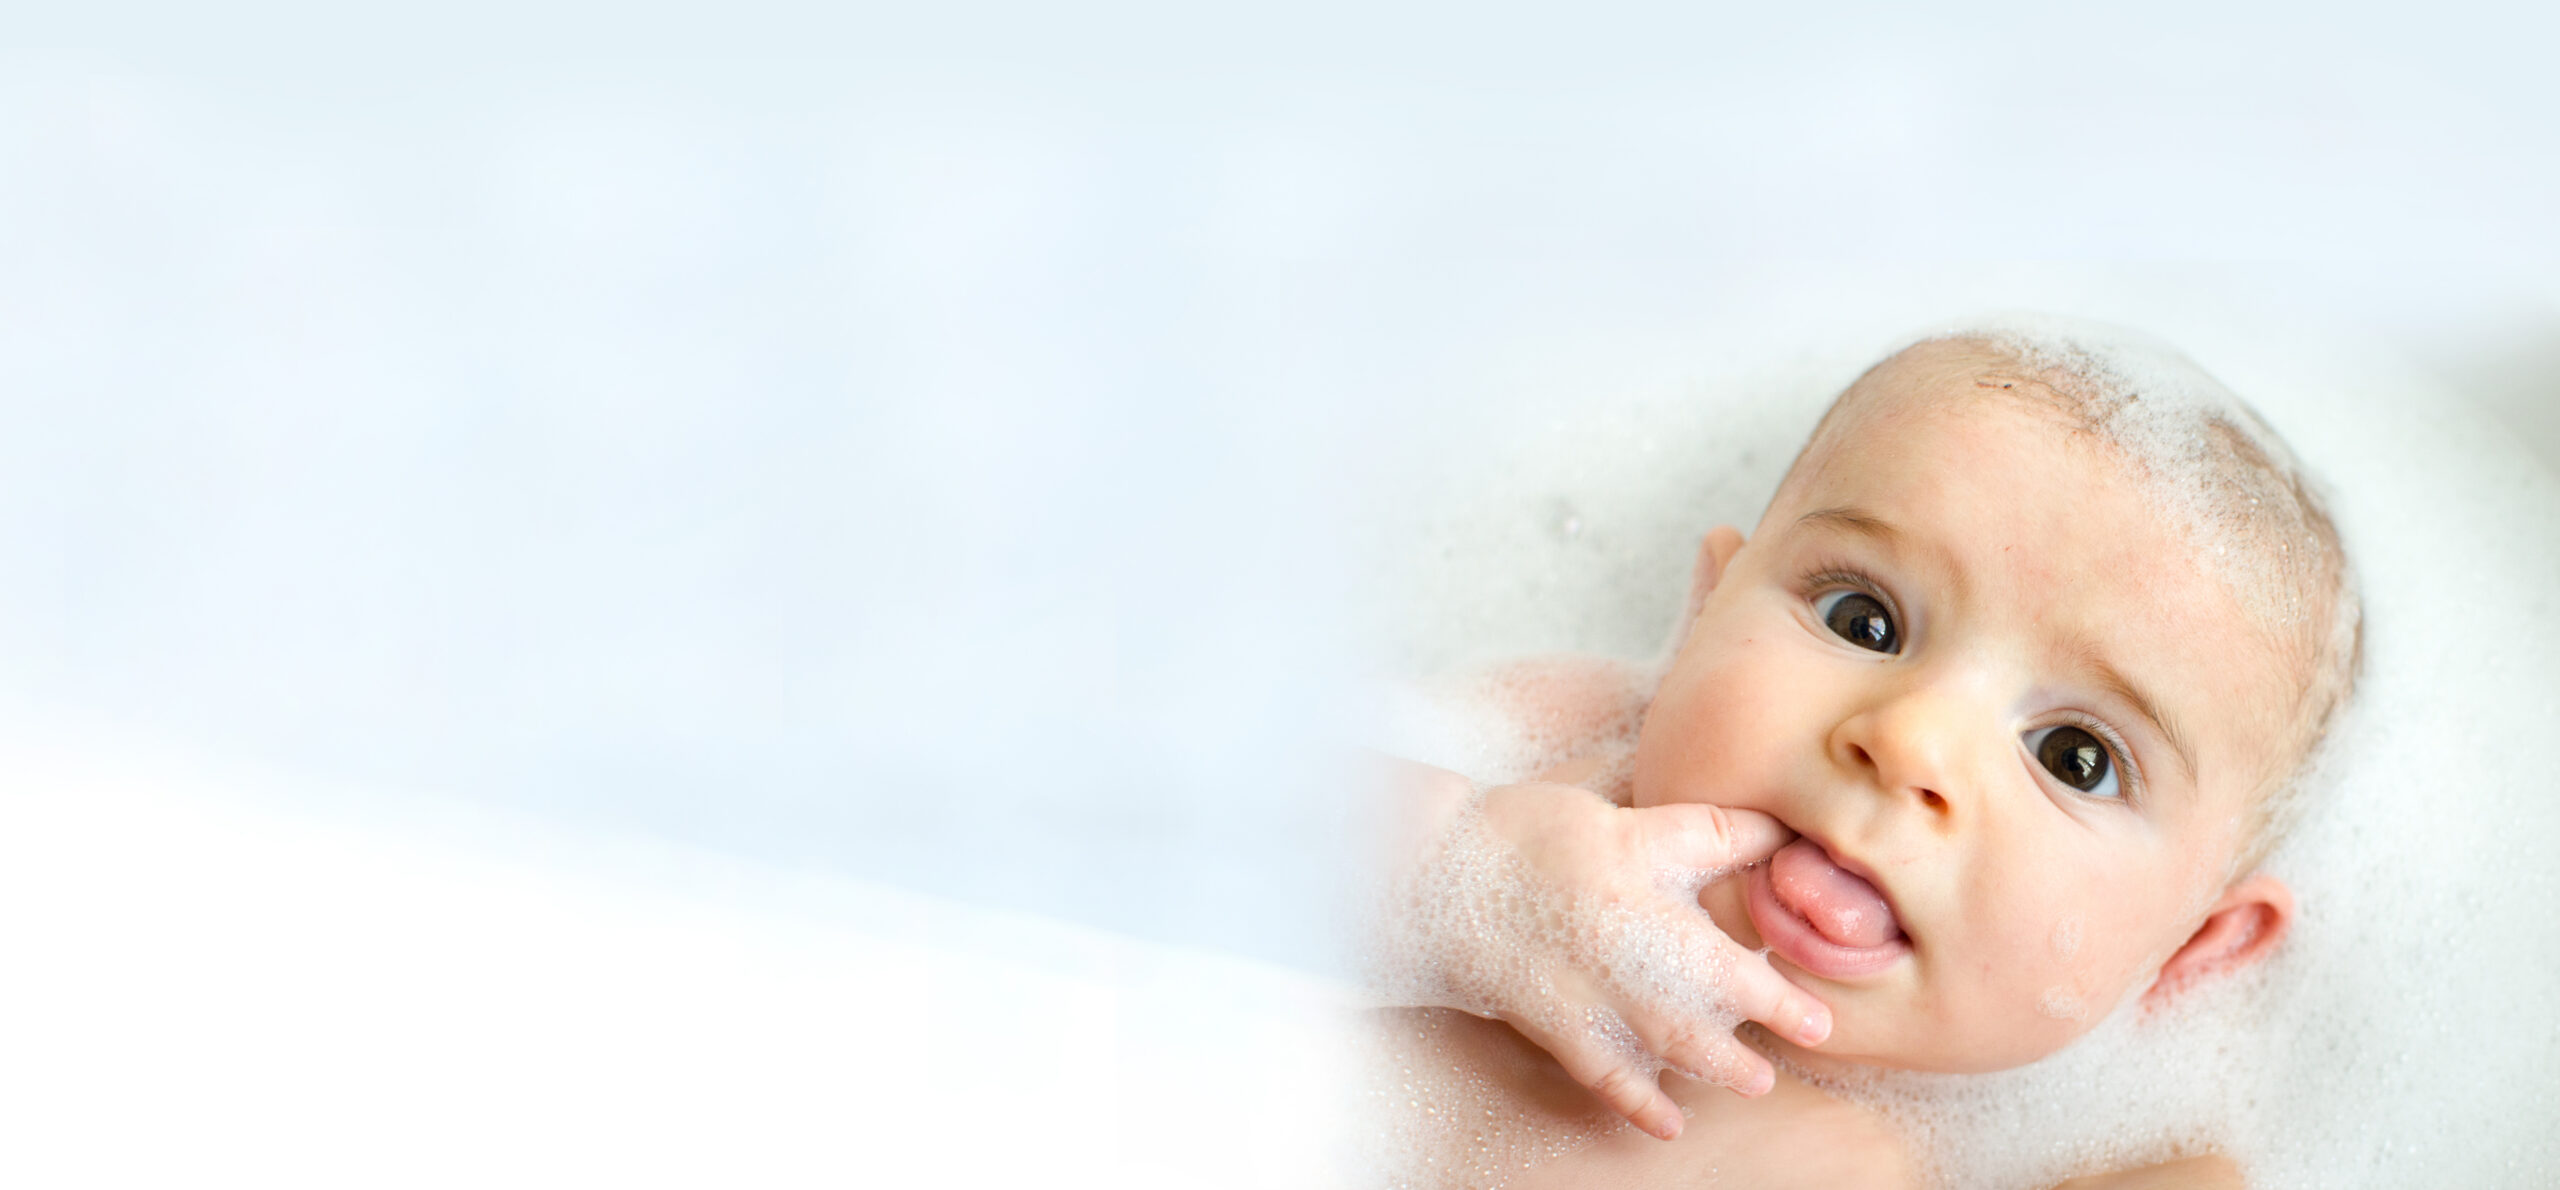 Shot of a cut baby boy having fun in the bathtub